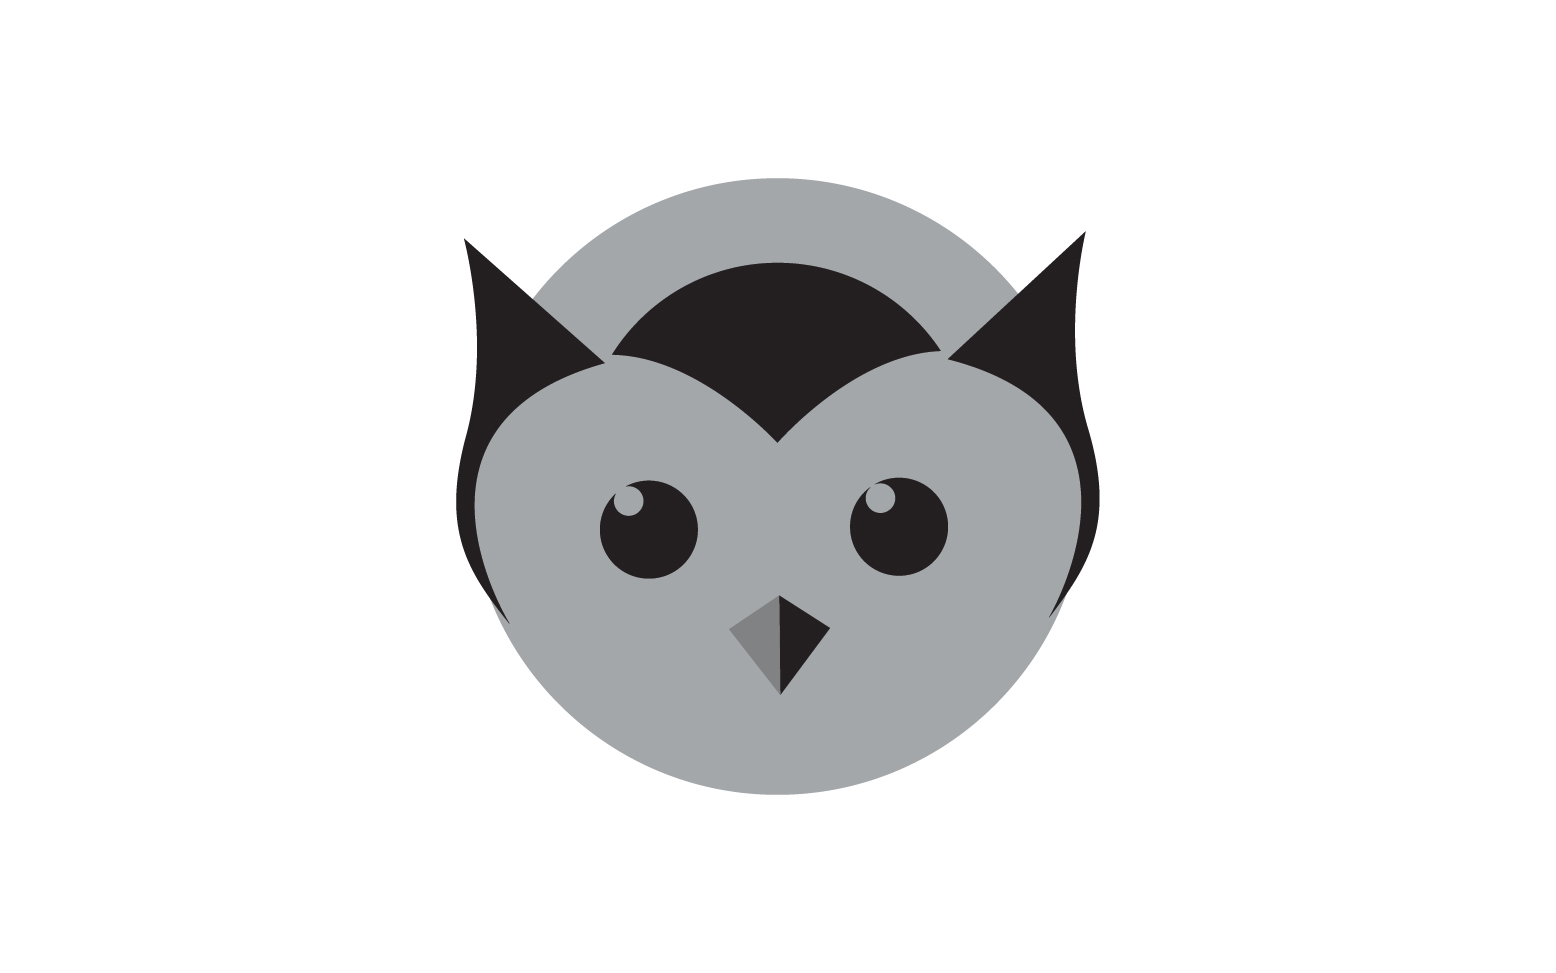 Owl head bird logo template vector v9